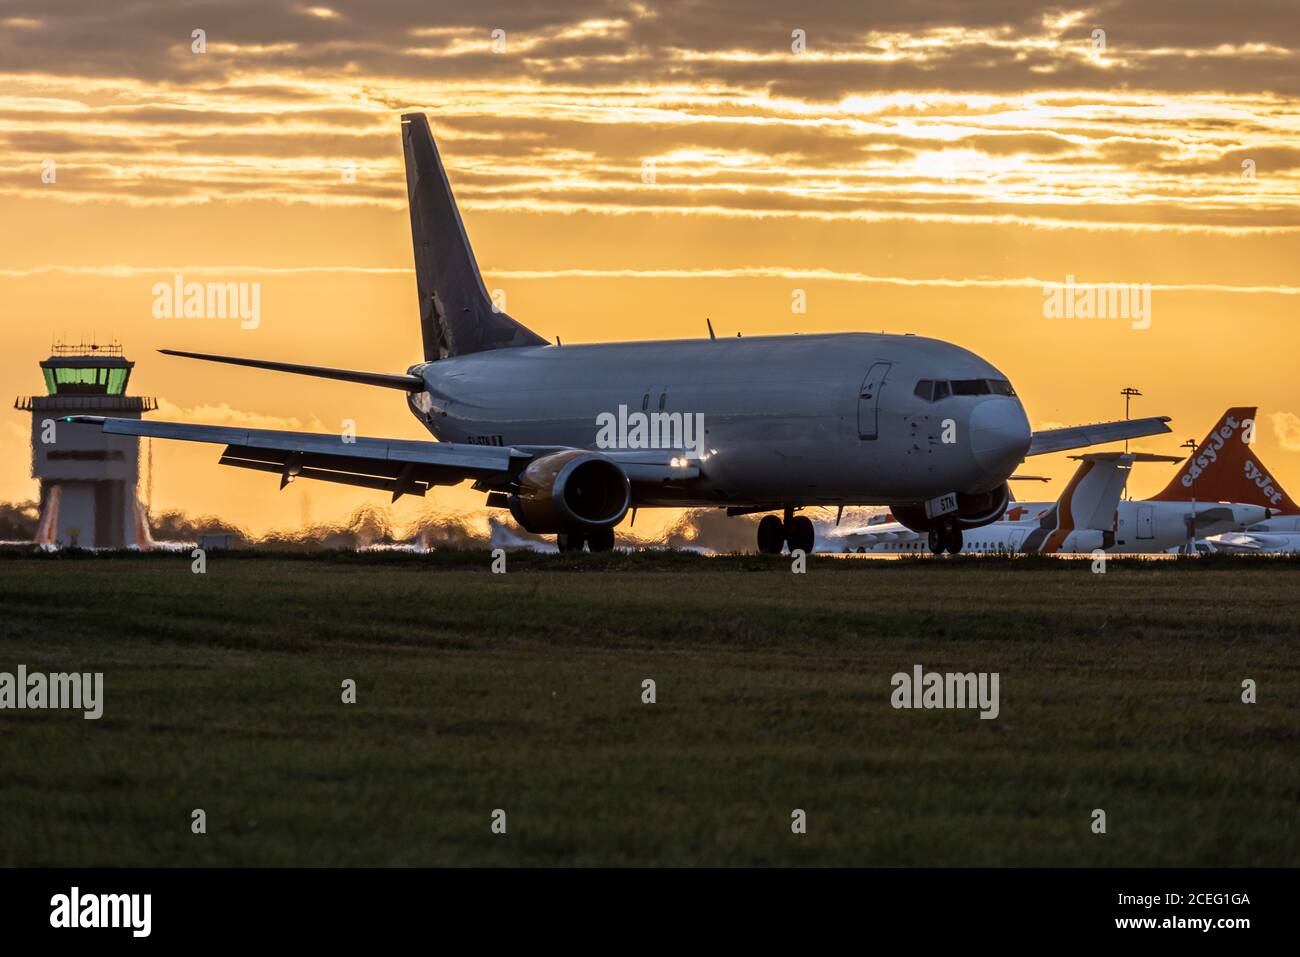 Titan Airways Cargo Jet Flugzeug arbeitet für ASL Airlines Transport Amazon  Pakete, Landung in der Morgendämmerung mit rotem Himmel des Sonnenaufgangs,  als Flughafen öffnet für Operationen Stockfotografie - Alamy